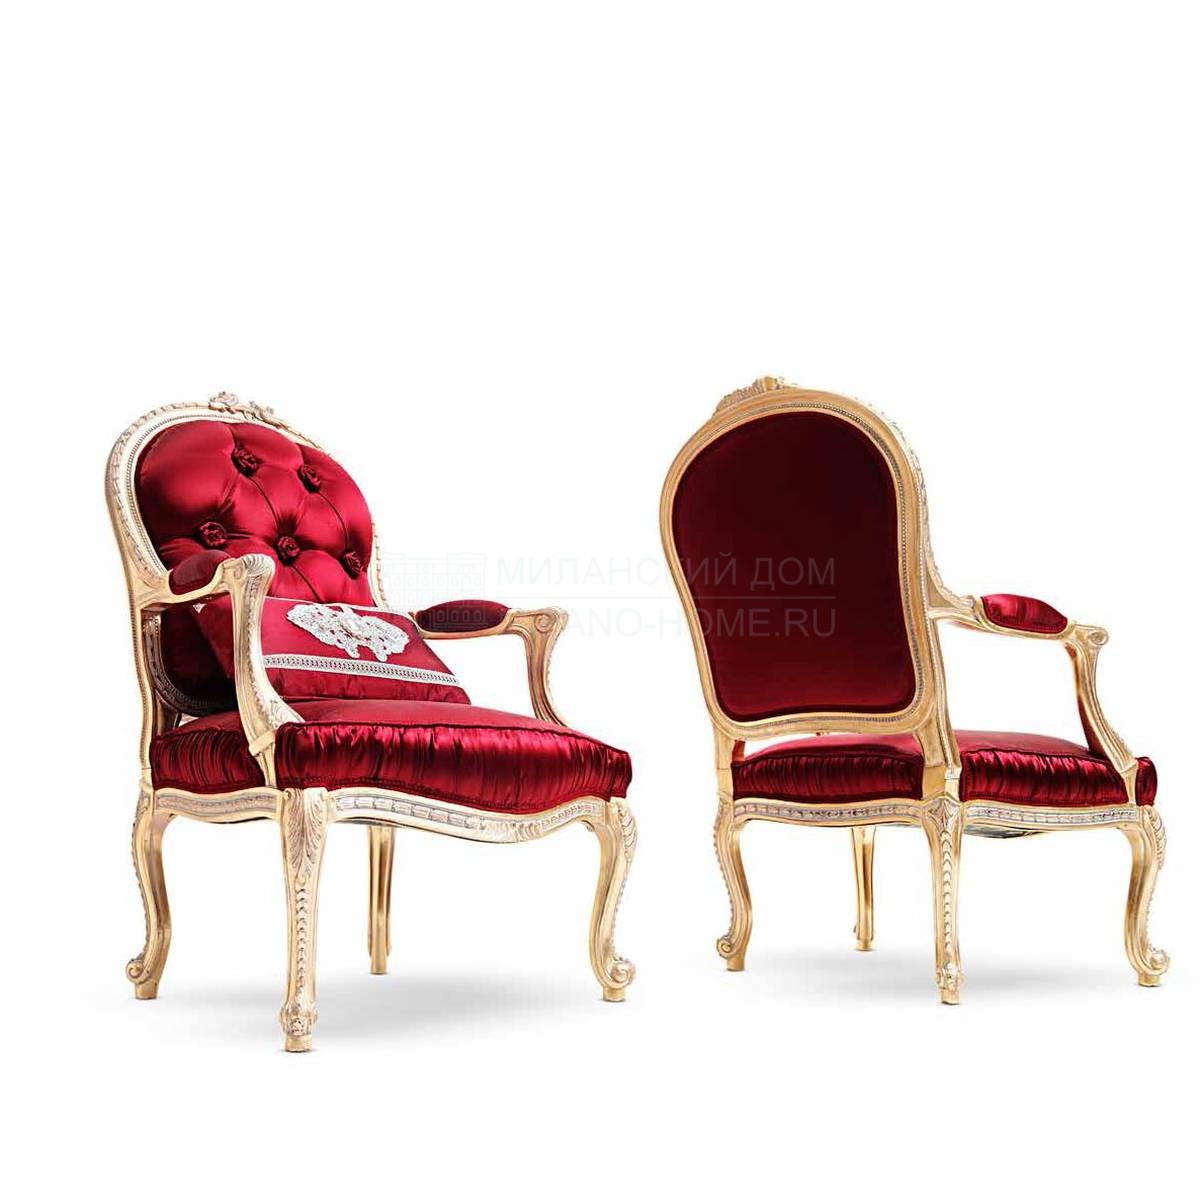 Кресло L1. 1801 Teseo/armchair из Италии фабрики ASNAGHI INTERIORS